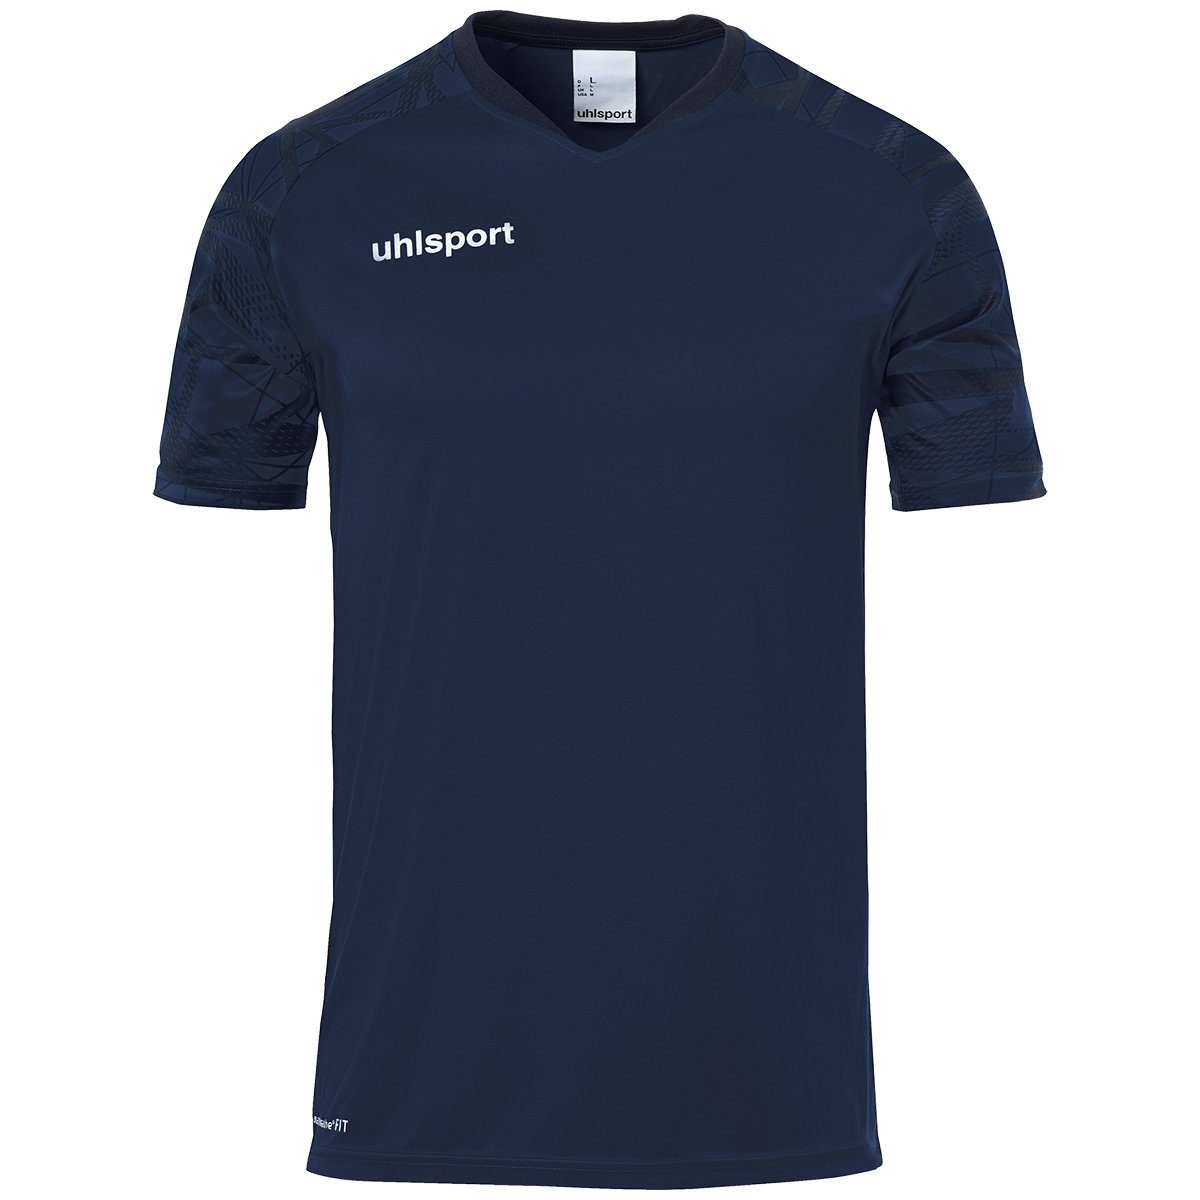 25 marine/marine atmungsaktiv GOAL Trainingsshirt uhlsport KURZARM Trainings-T-Shirt TRIKOT uhlsport